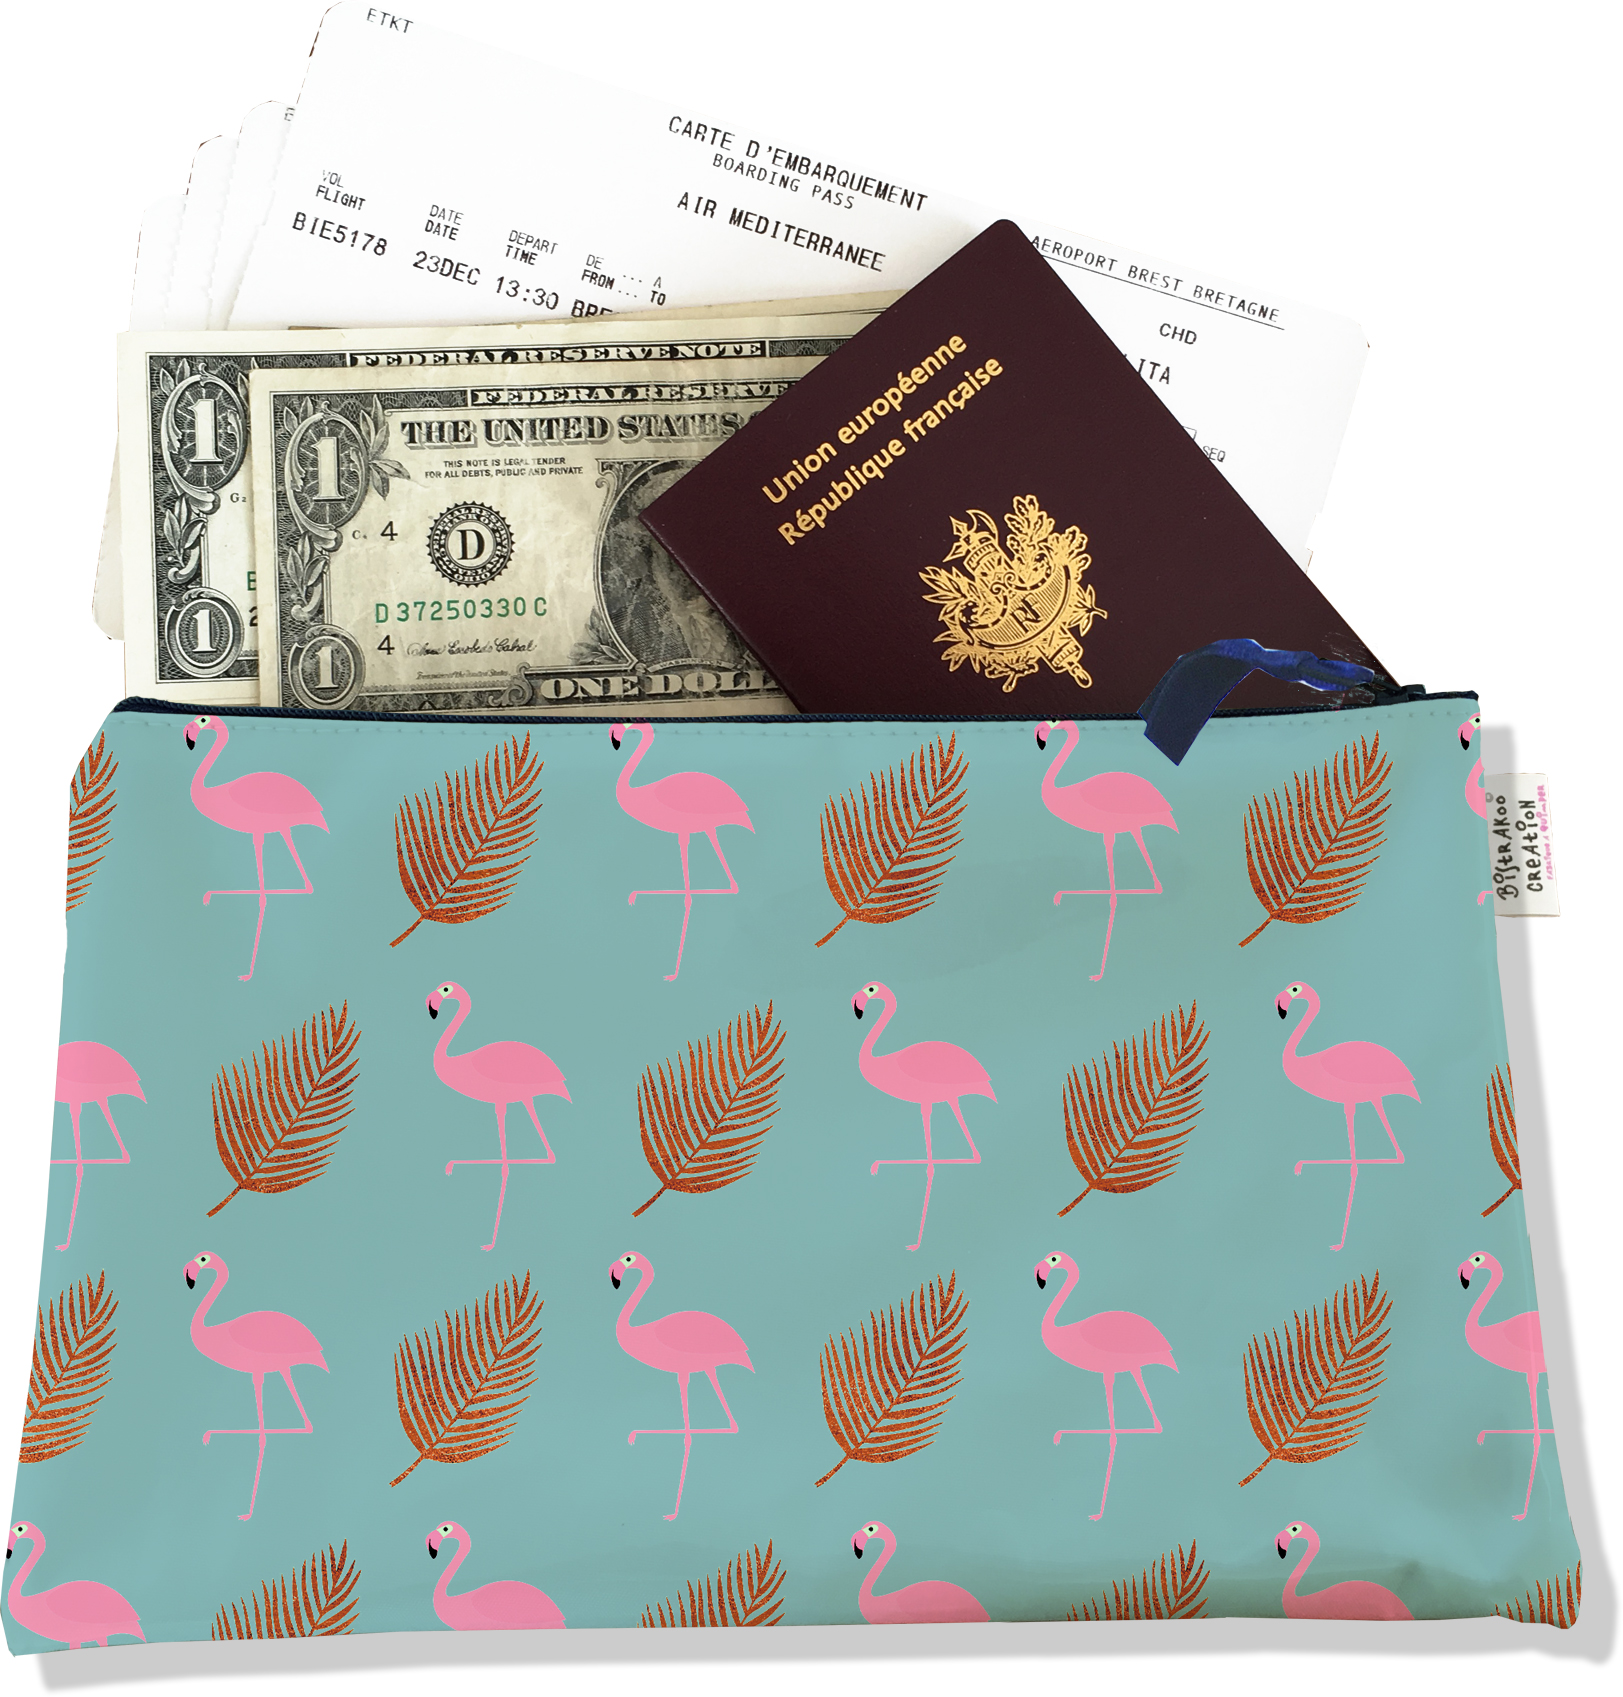 Pochette Voyage - Pour ranger vos papiers et accessoires, offrant praticité et organisation - flamants roses et plumes fond bleu